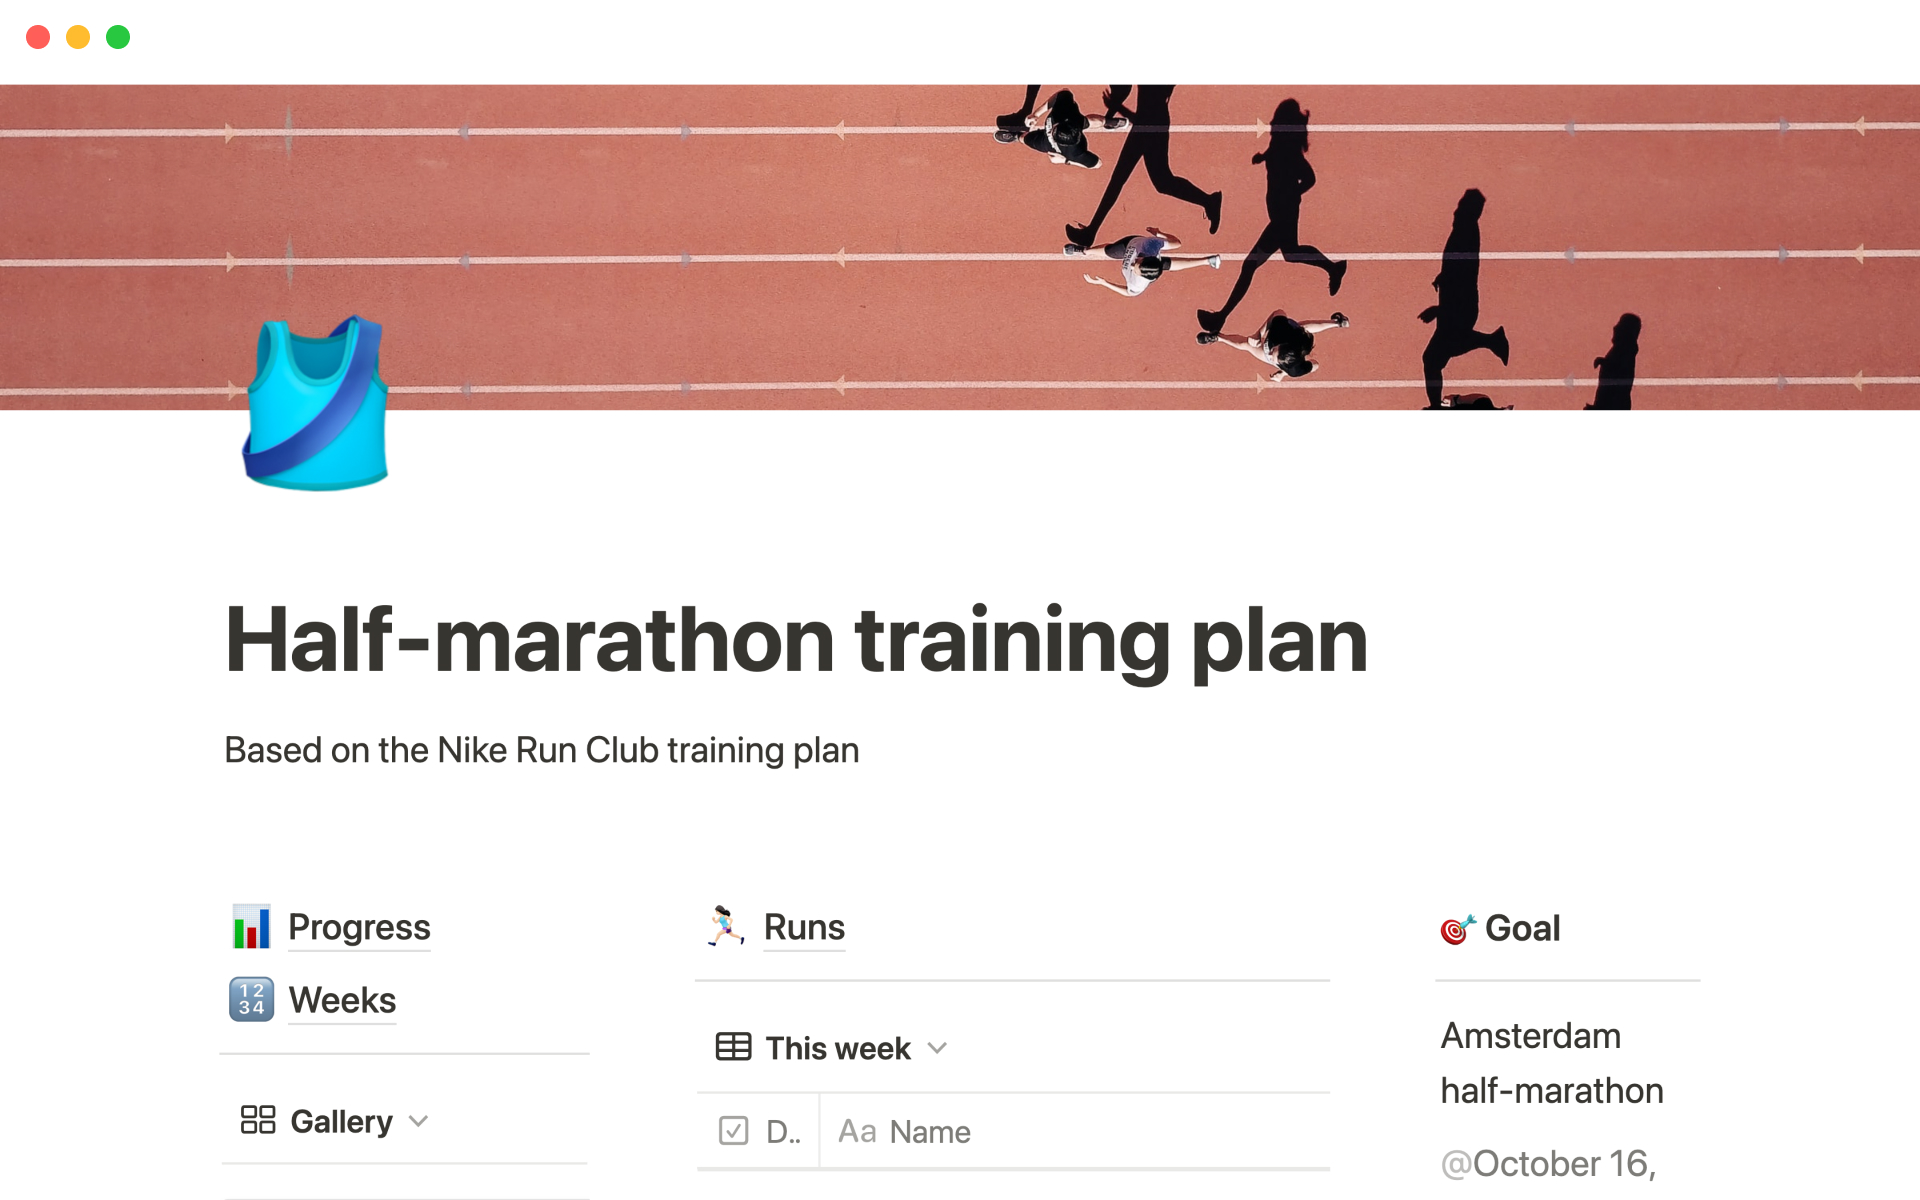 NRC half-marathon training plan님의 템플릿 미리보기